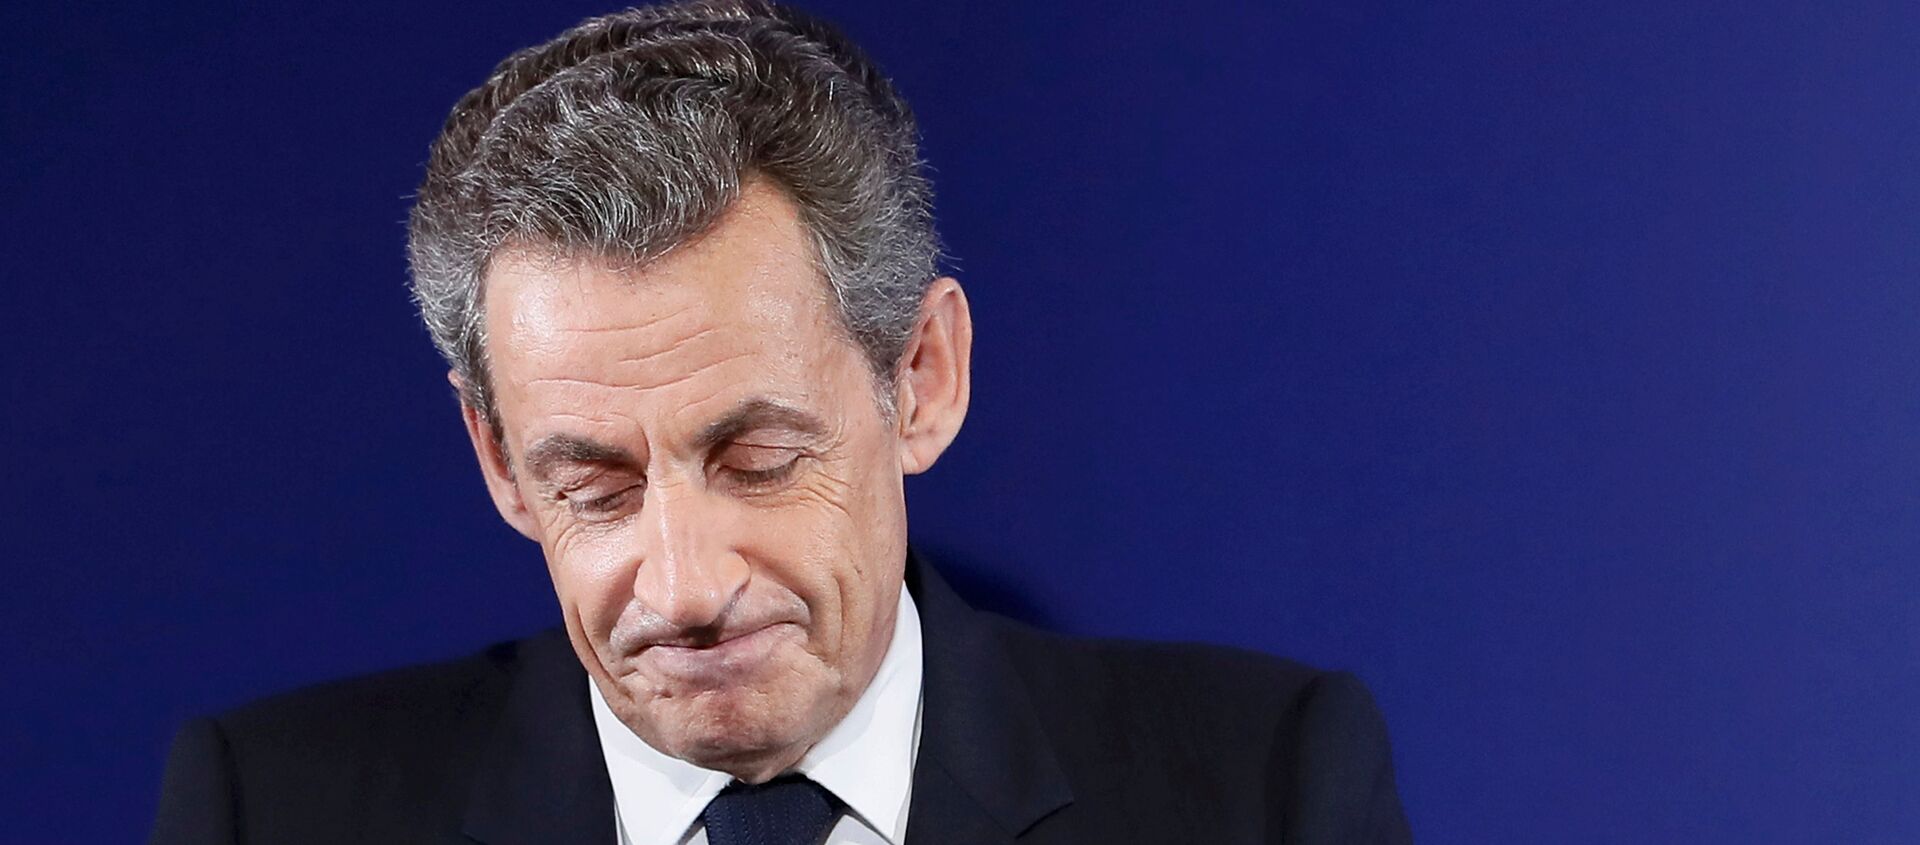 Nicolas Sarkozy, former French president, at his headquarters in Paris , France, November 20, 2016 - Sputnik Mundo, 1920, 07.07.2020